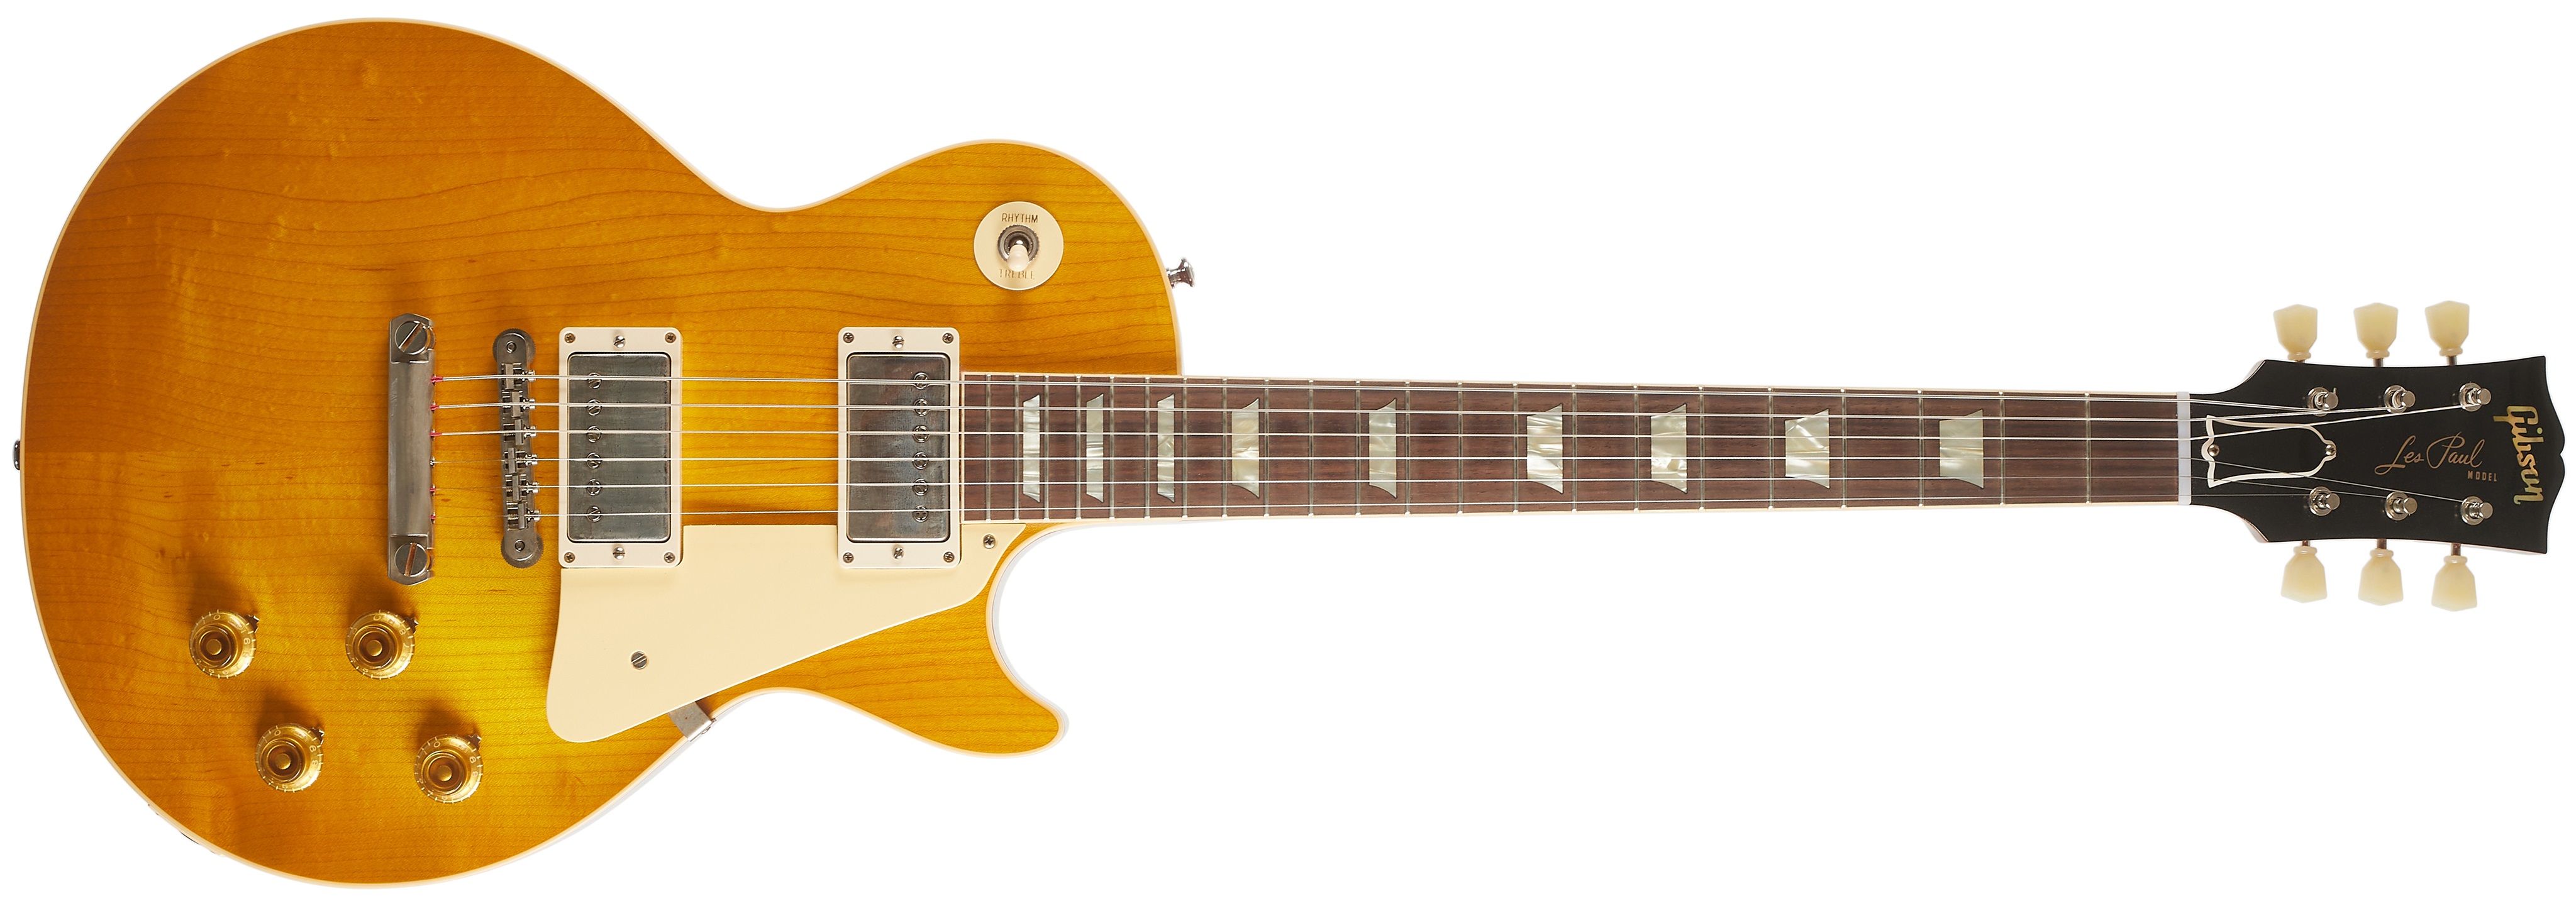 Gibson CS 1958 Les Paul Standard Reissue VOS Lemon Burst